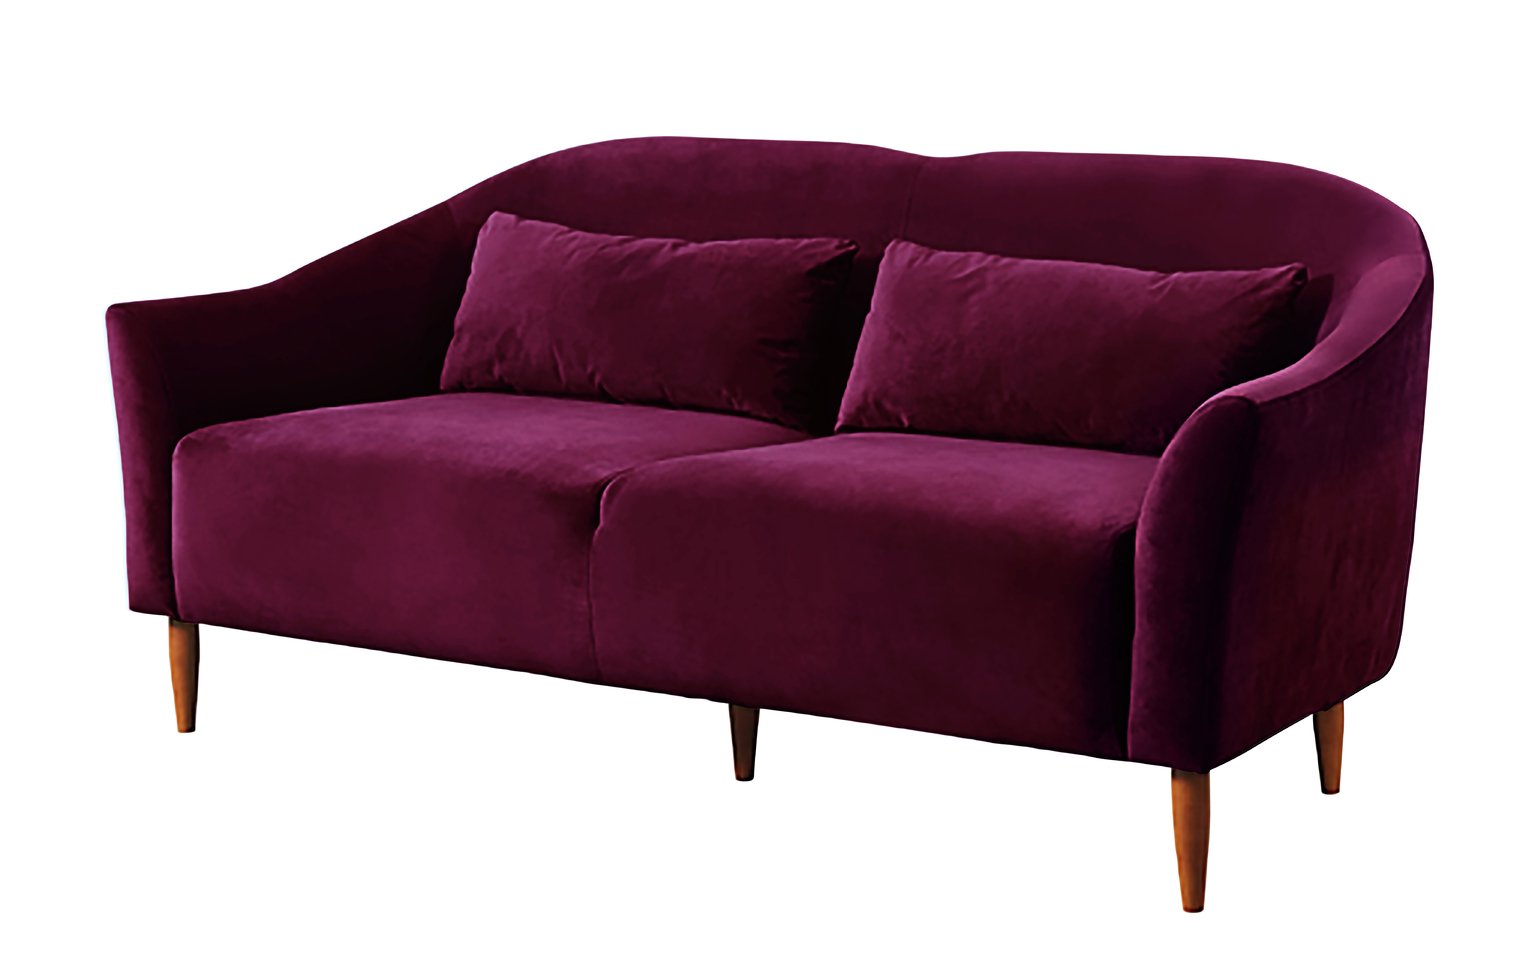 Habitat Lipps 3 Seater Velvet Sofa Review